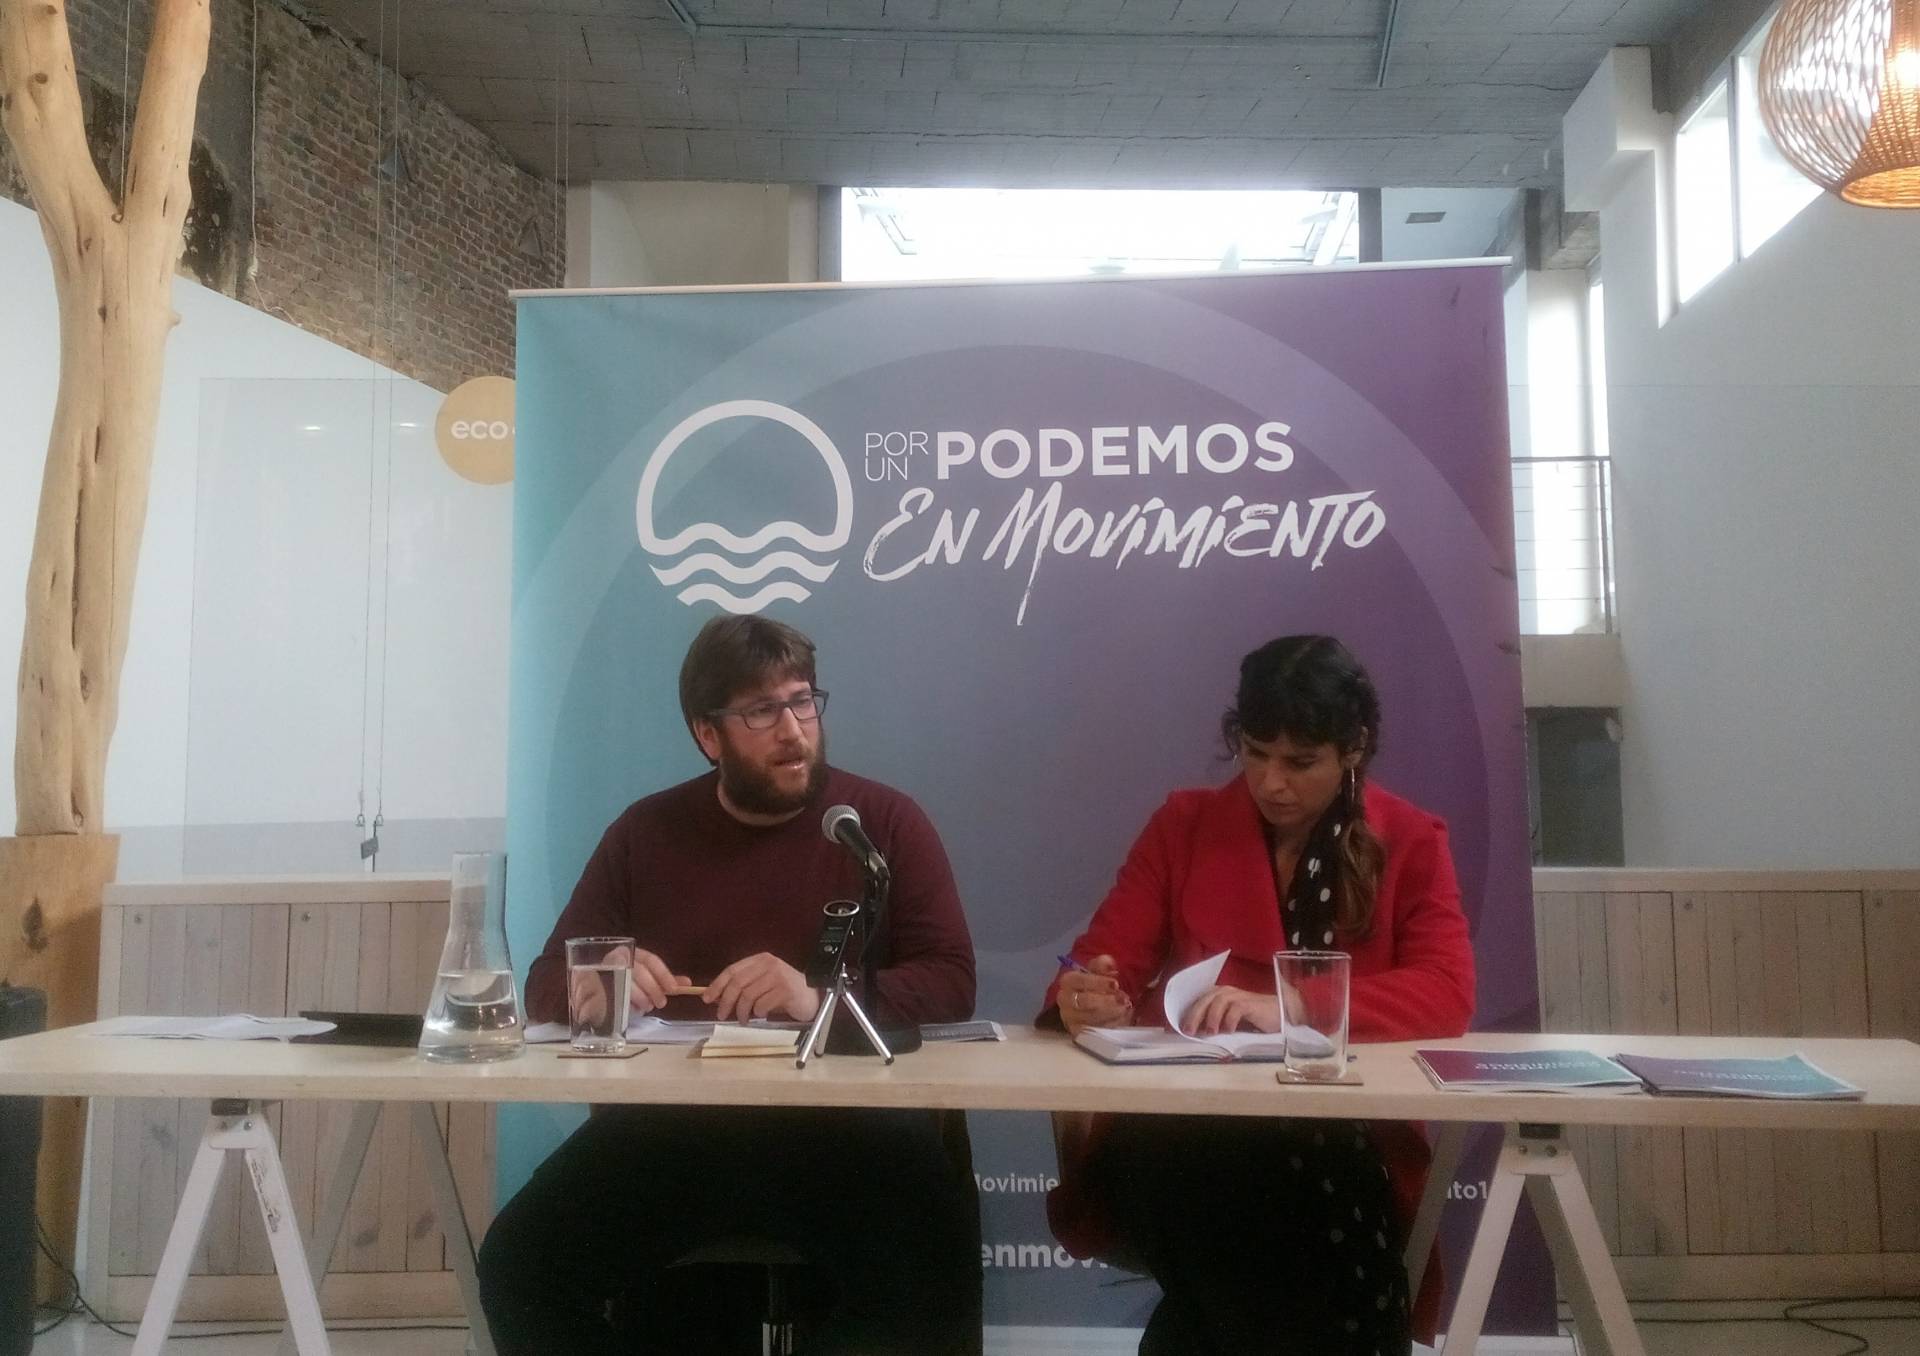 Anticapitalistas propone eliminar la figura del secretario general de Podemos